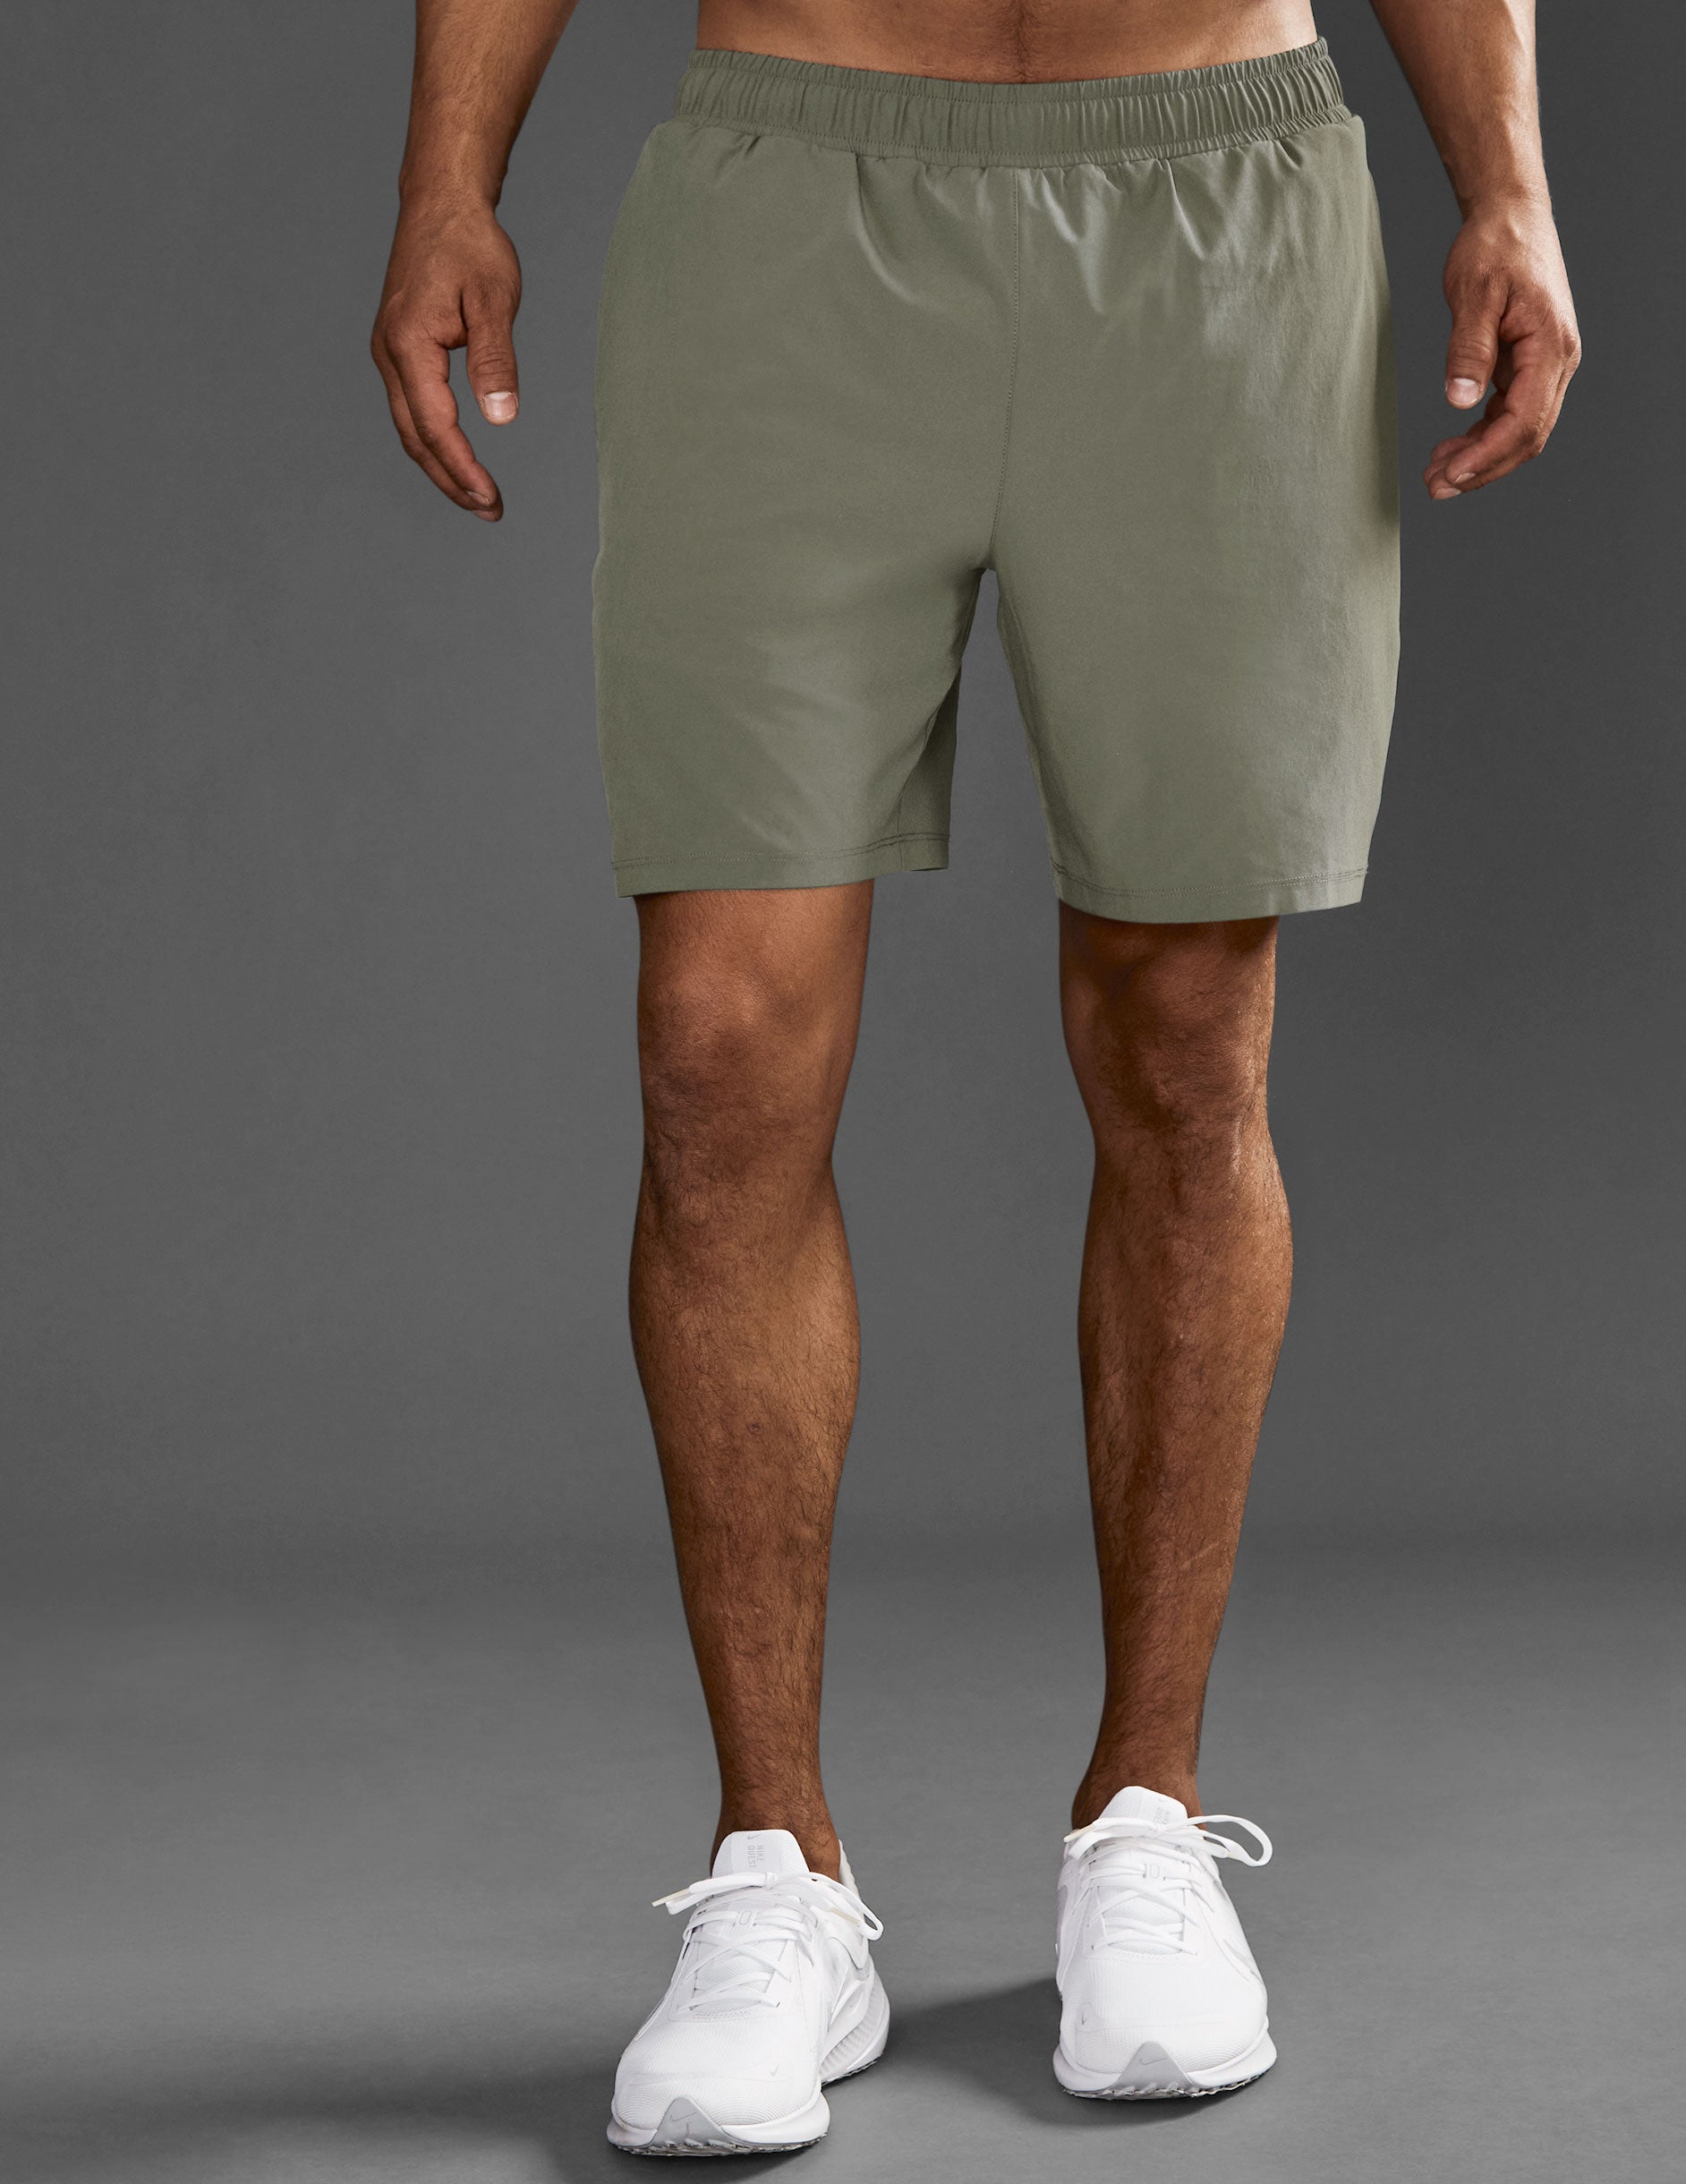 grey mens shorts